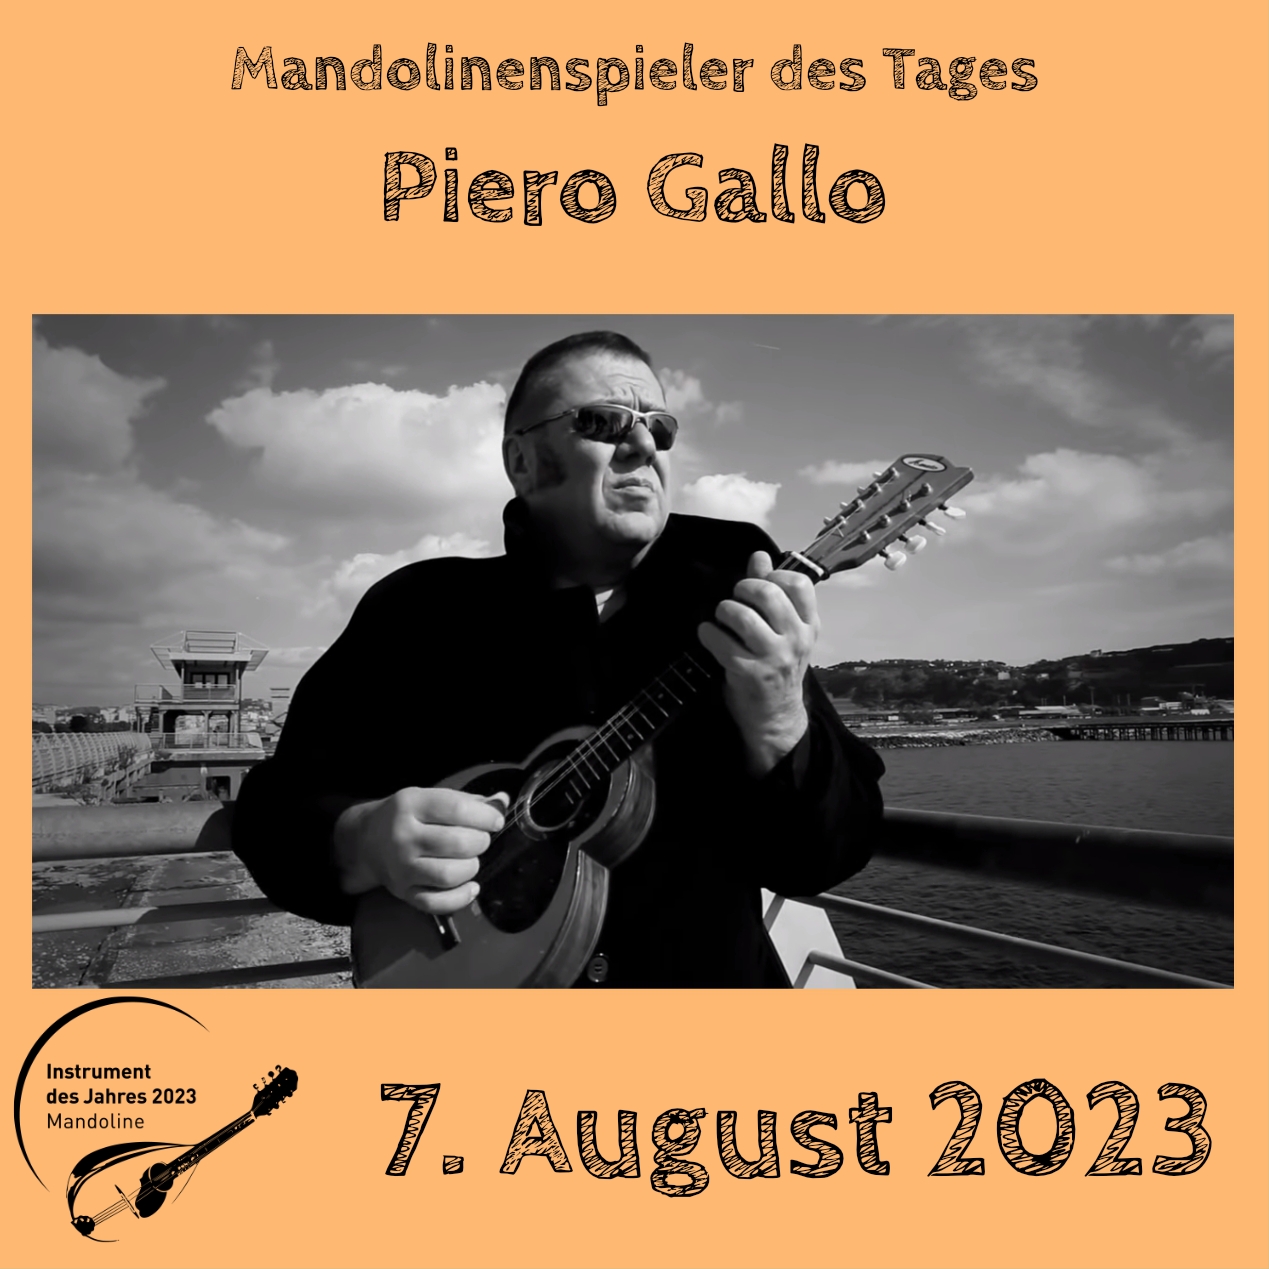 7. August  - Piero Gallo Mandoline Instrument des Jahres 2023 Mandolinenspieler Mandolinenspielerin des Tages